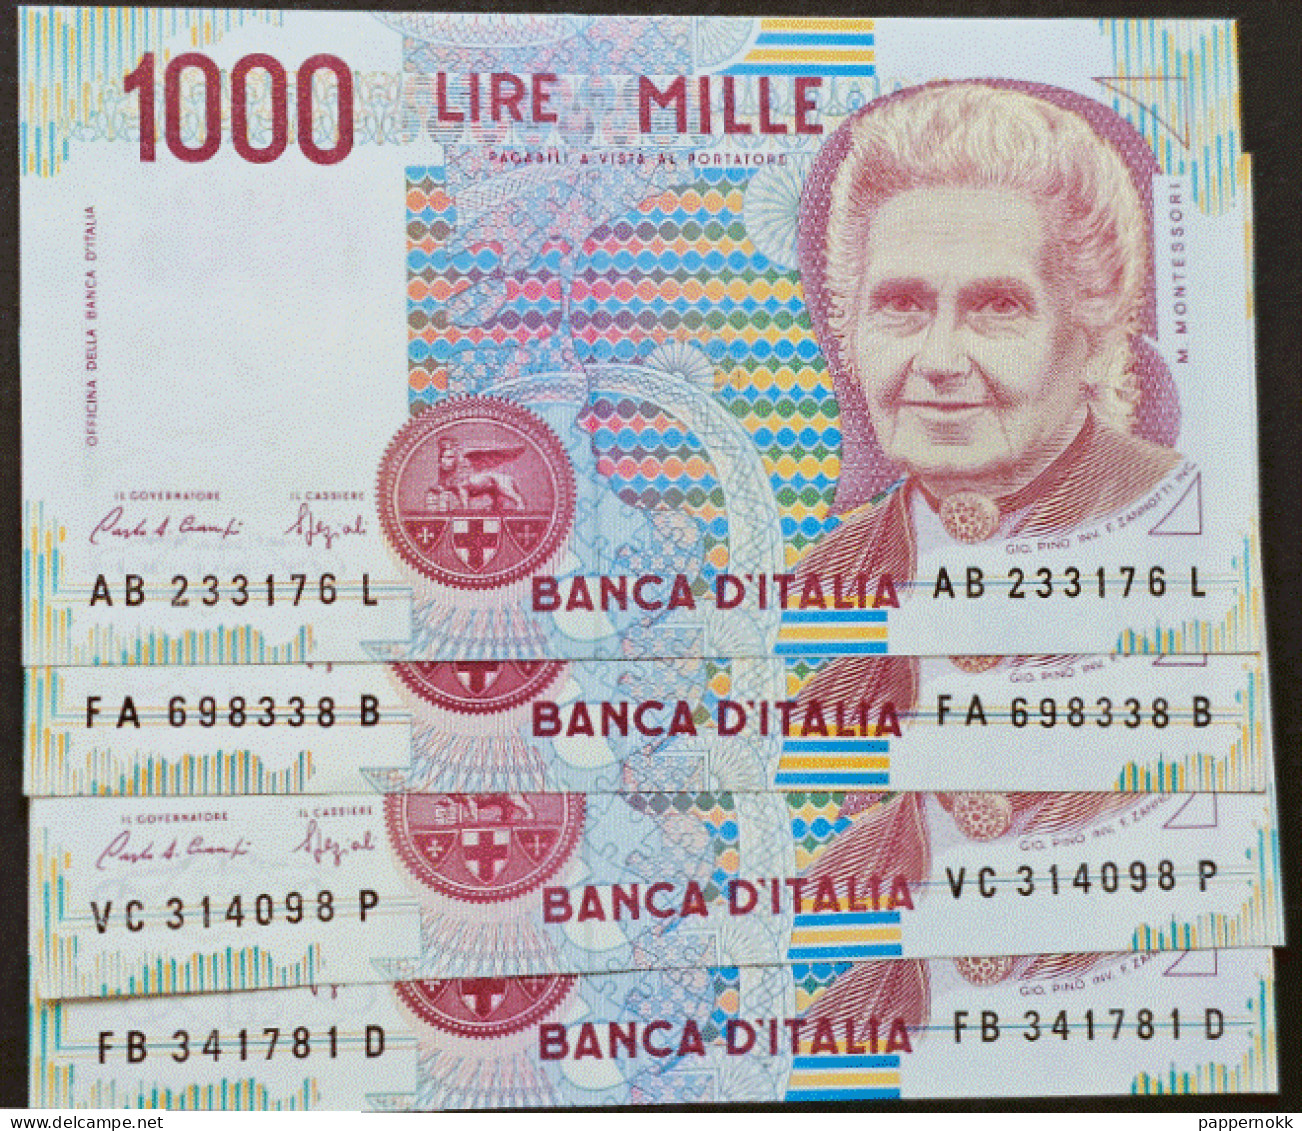 1000 Lire Montessori  4 Banconote  FDS/UNC  Banconote Impeccabili, Mai Circolate. - 1.000 Lire